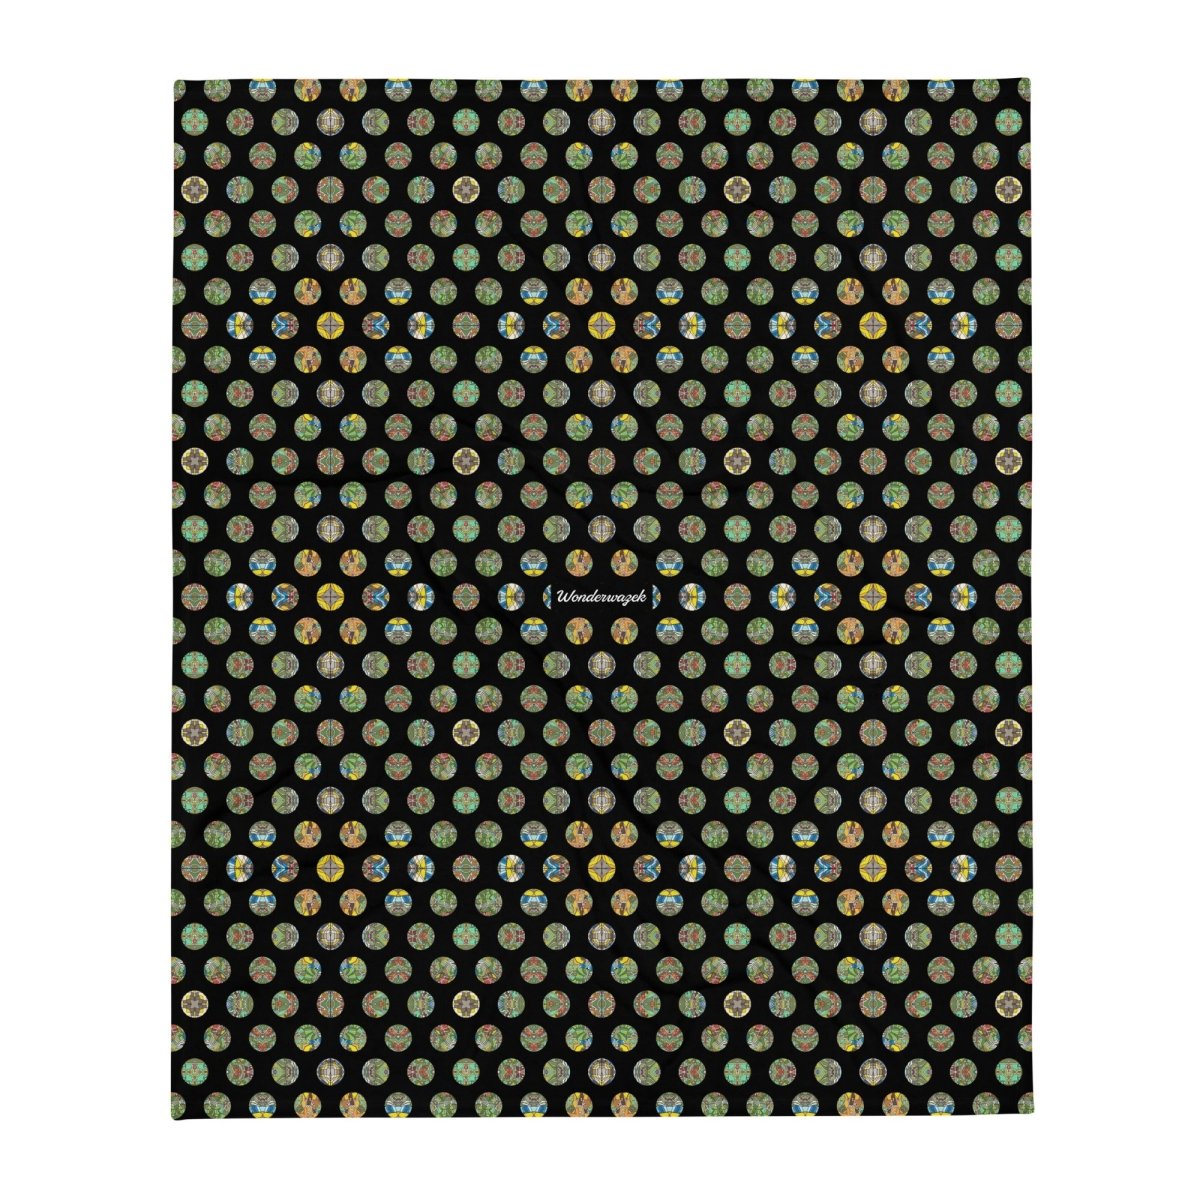 Decke • Madeira – Punkte, gelb, grün, schwarz - Wonderwazek